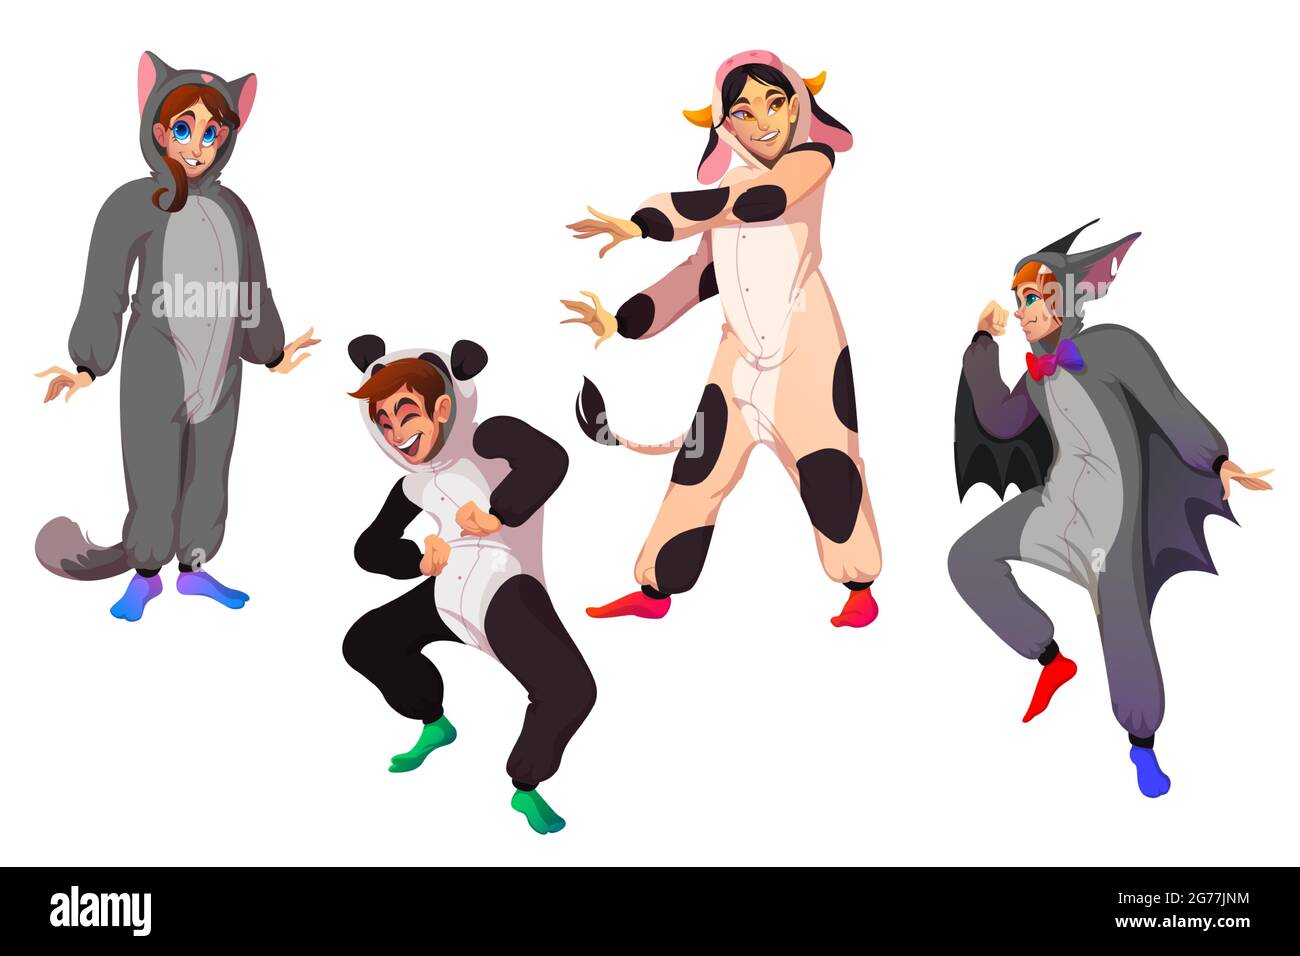 Personajes en kigurumi, personas con trajes de animales en la fiesta de  pijamas. Juego de dibujos animados vectoriales de hombres y mujeres felices  en pijamas divertidos de vaca, gato, murciélago y panda